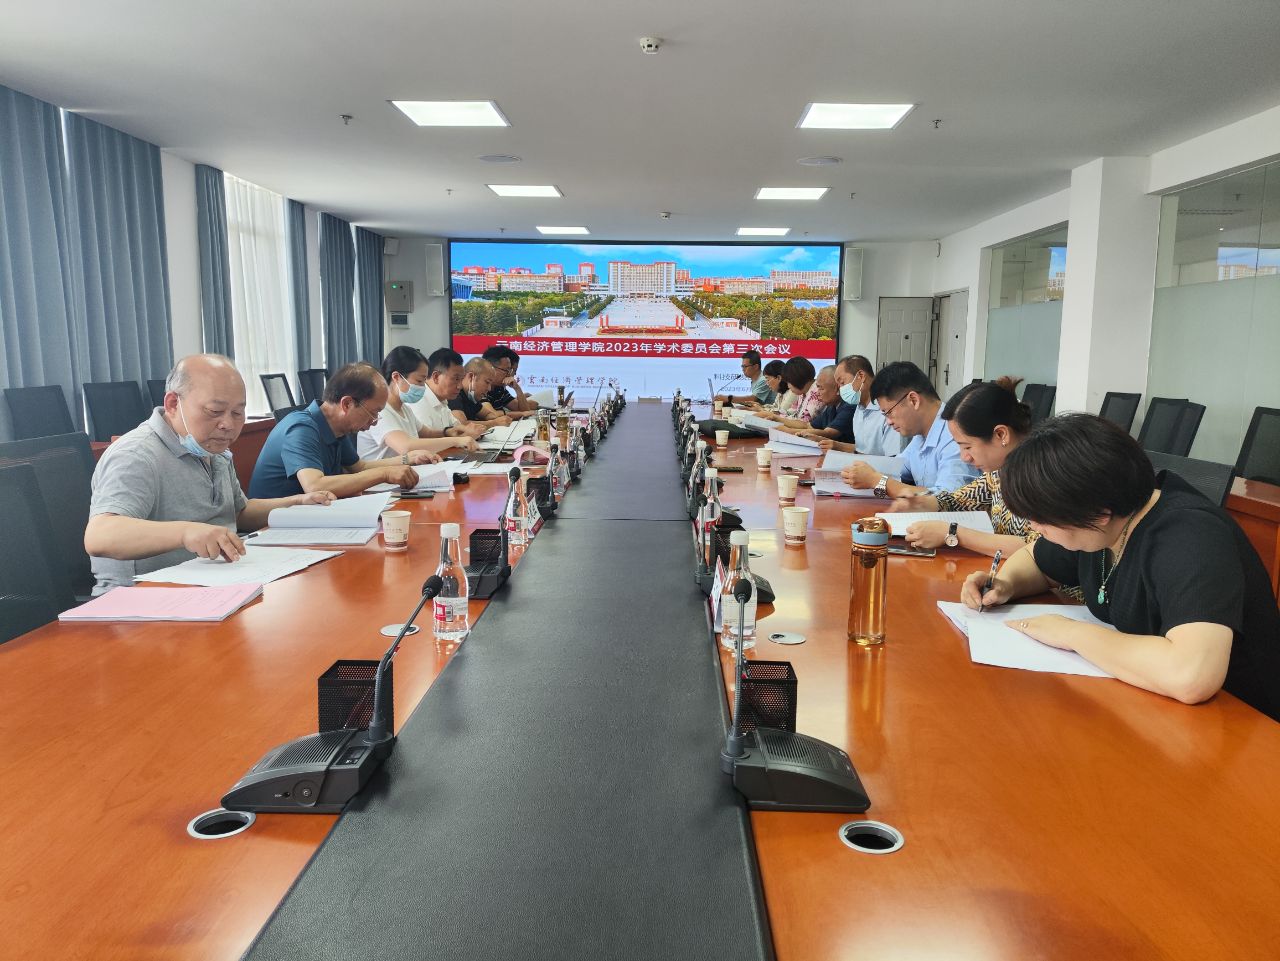 2023.6.29云南经济管理学院2023年学术委员会第三次会议顺利召开 第 1 张